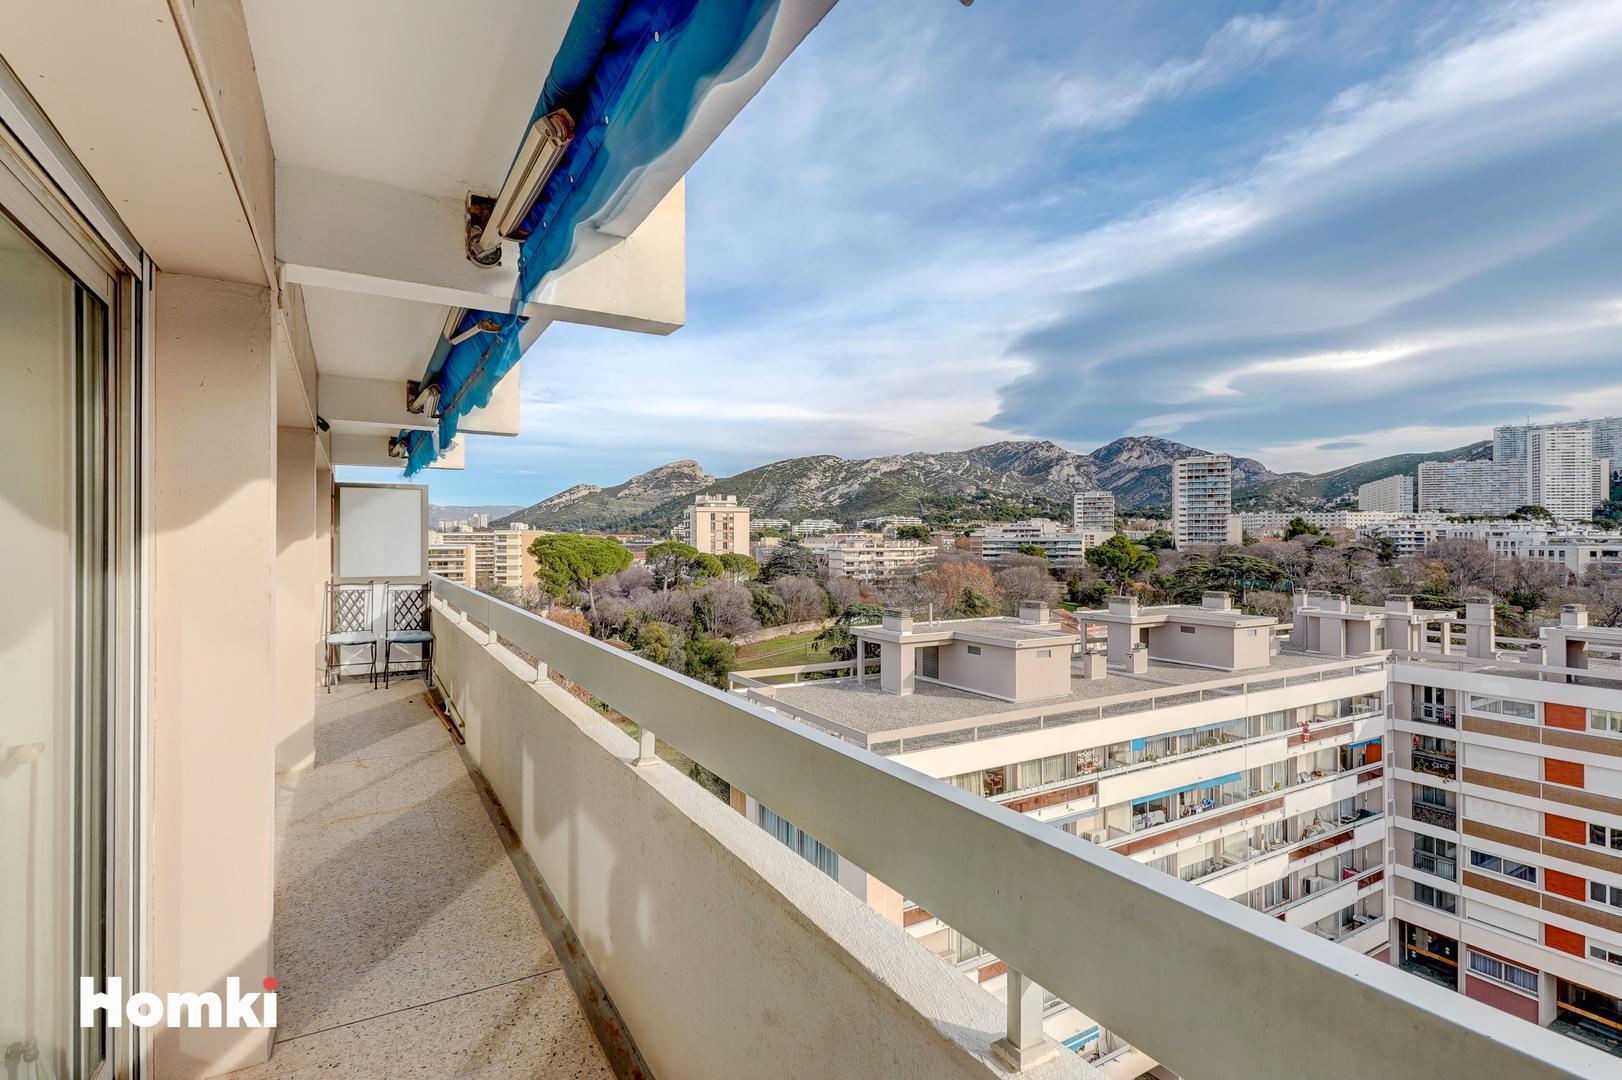 Homki - Vente Appartement  de 98.0 m² à Marseille 13009